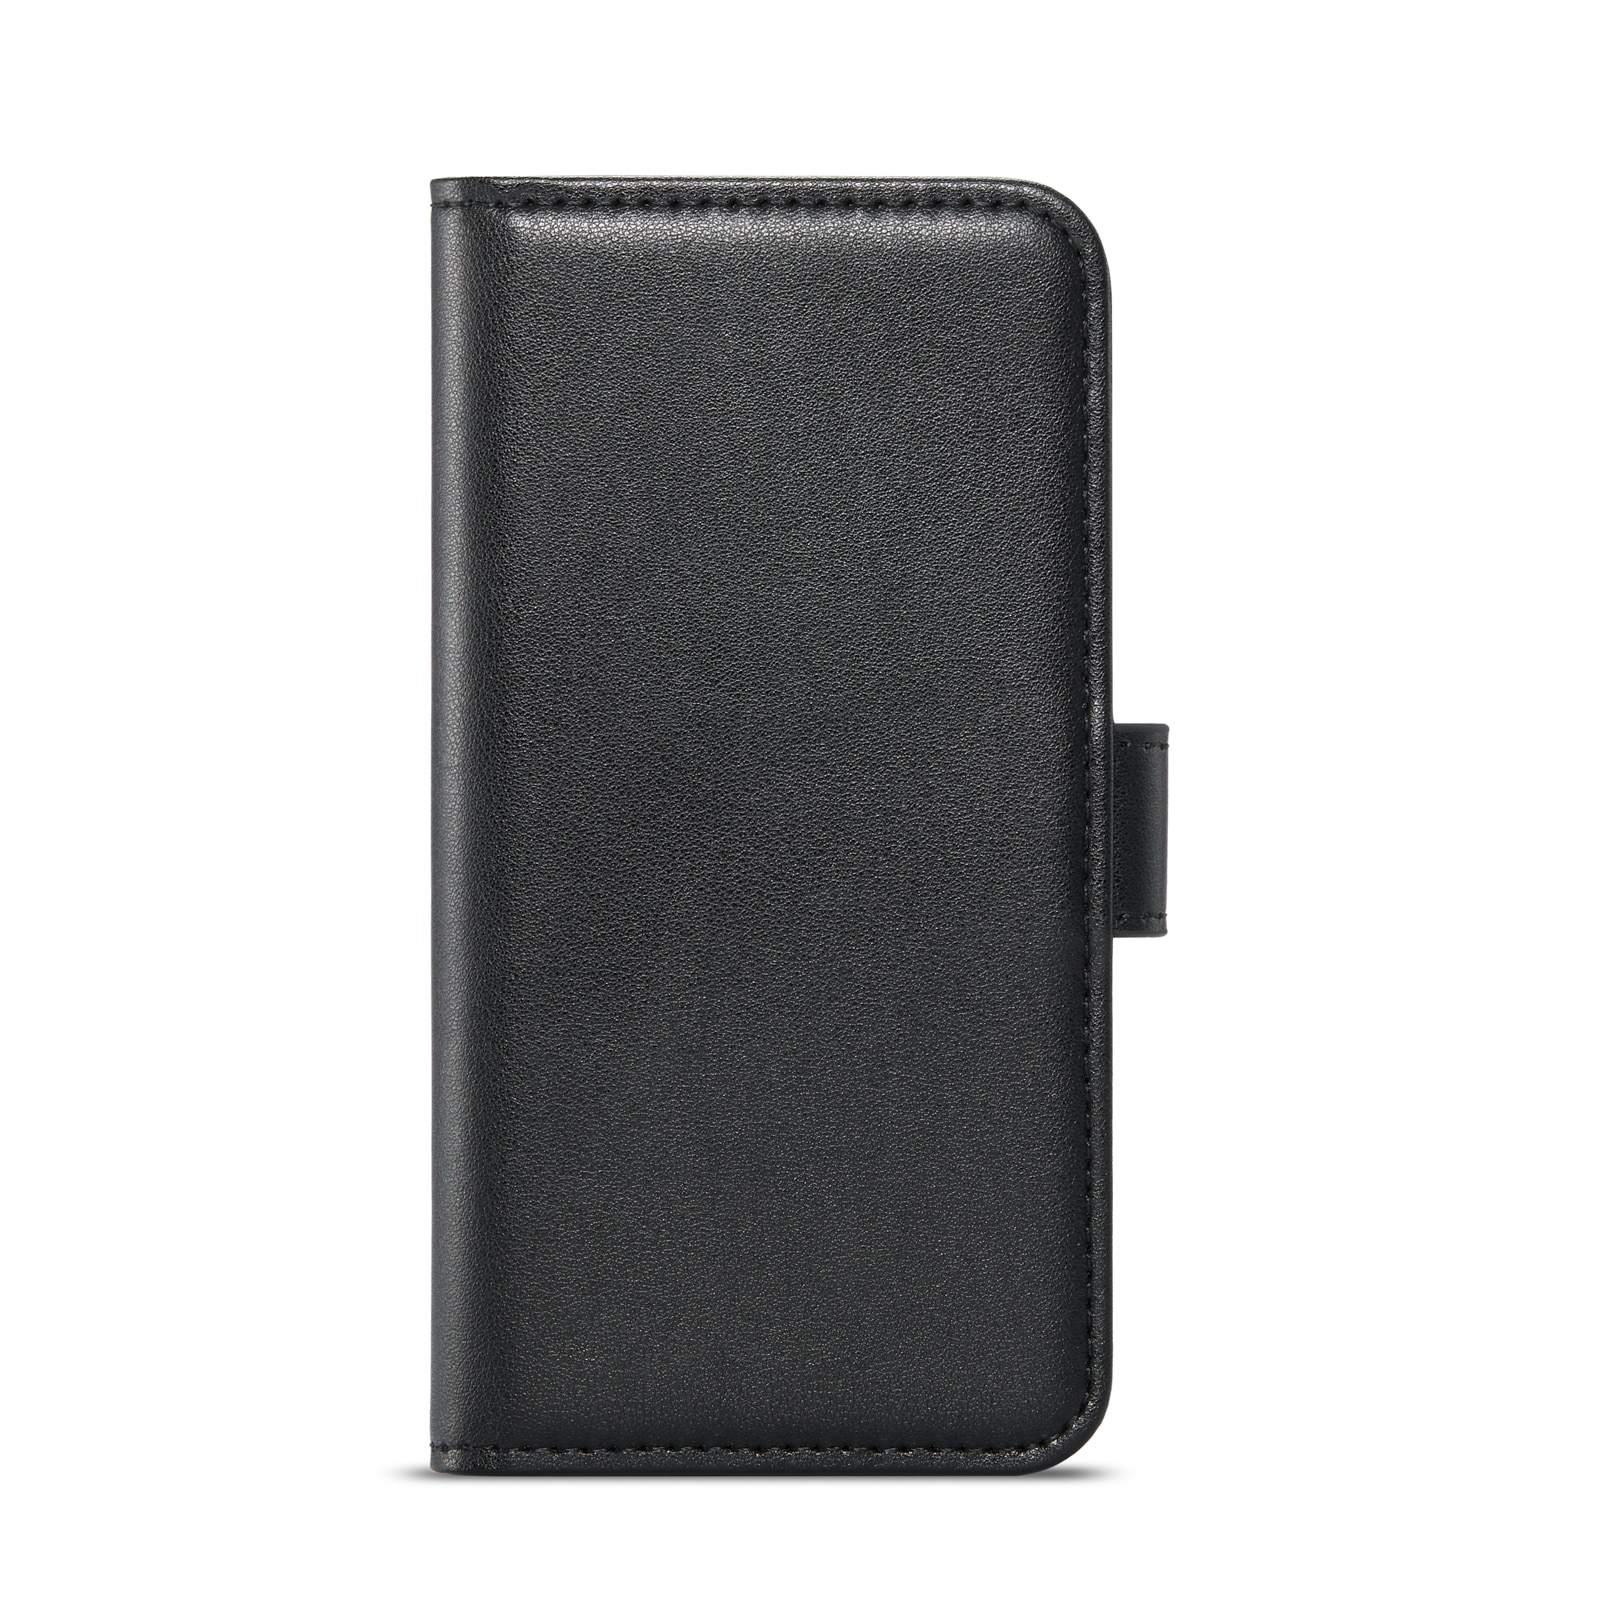 iPhone 7 Plånboksfodral i Äkta Läder, svart